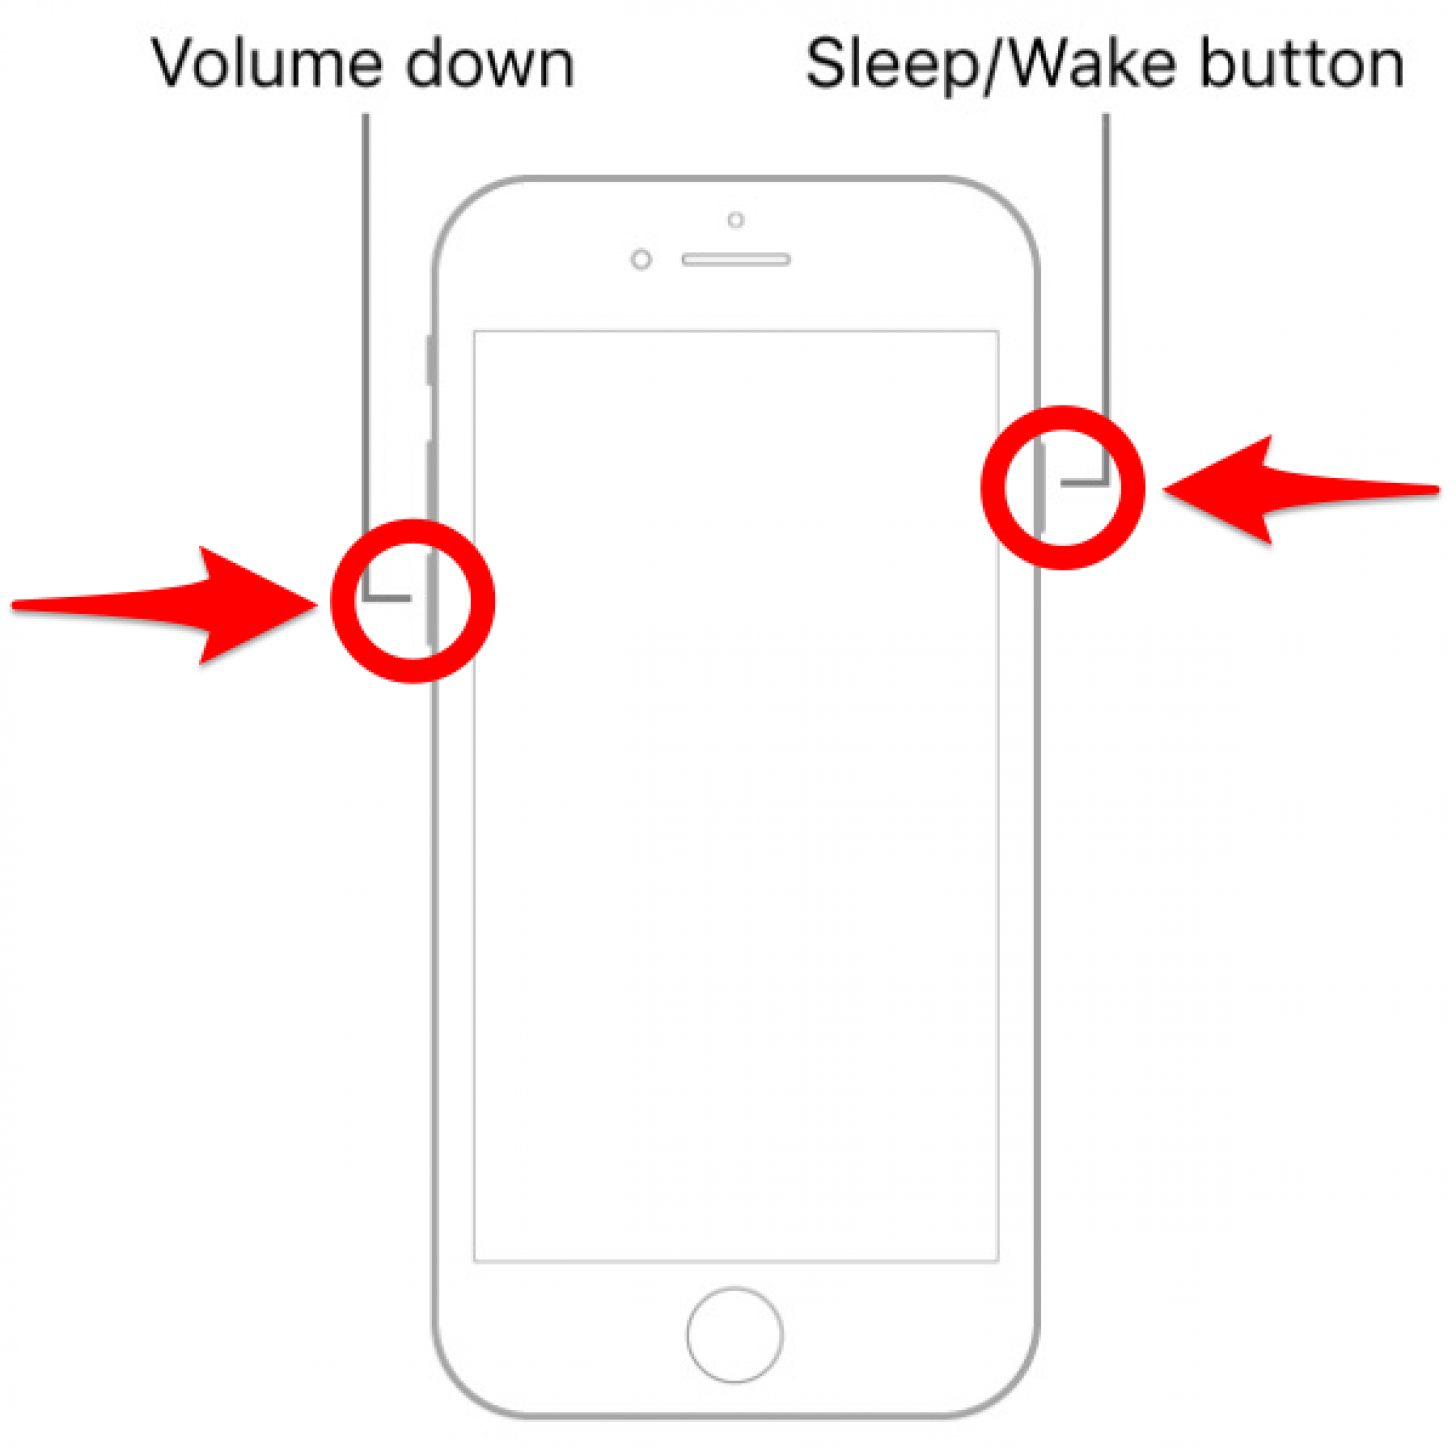 Mantenga presionado el botón para bajar el volumen y el botón de reposo/activación simultáneamente: ¿cómo se realiza un restablecimiento completo?